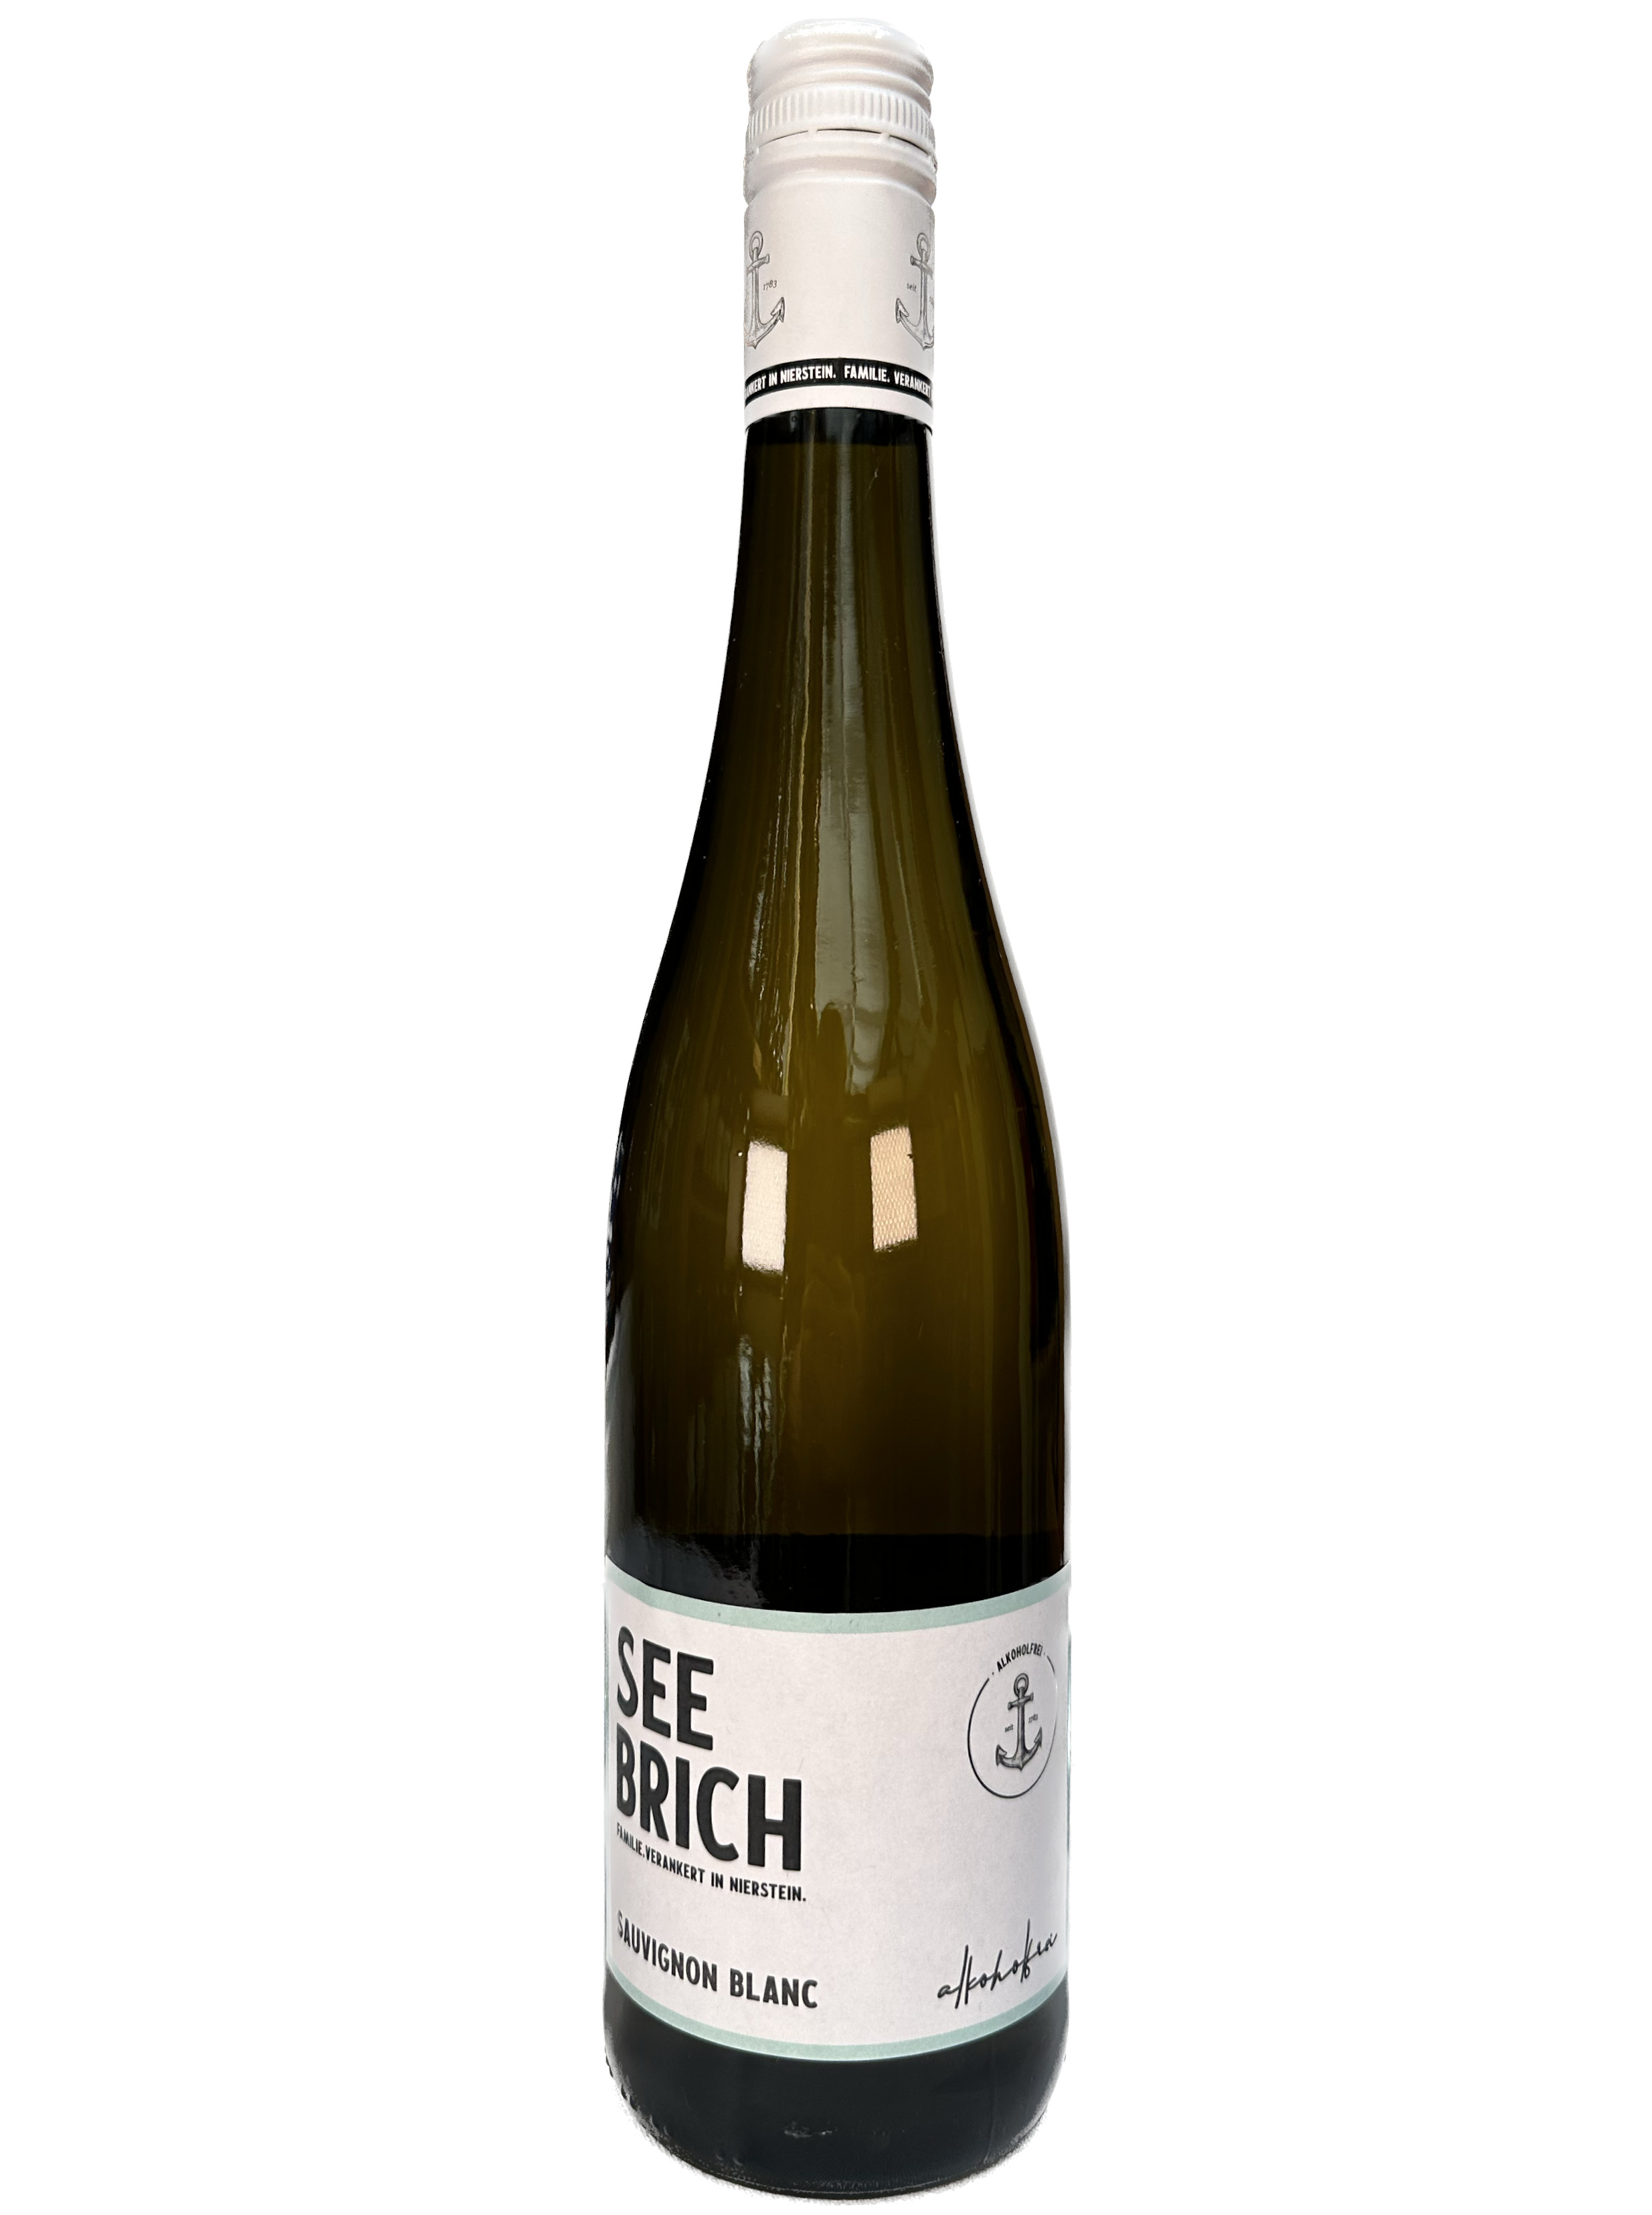 Online Sauvignon Blanc alkoholfrei Weinhandel Seebrich -